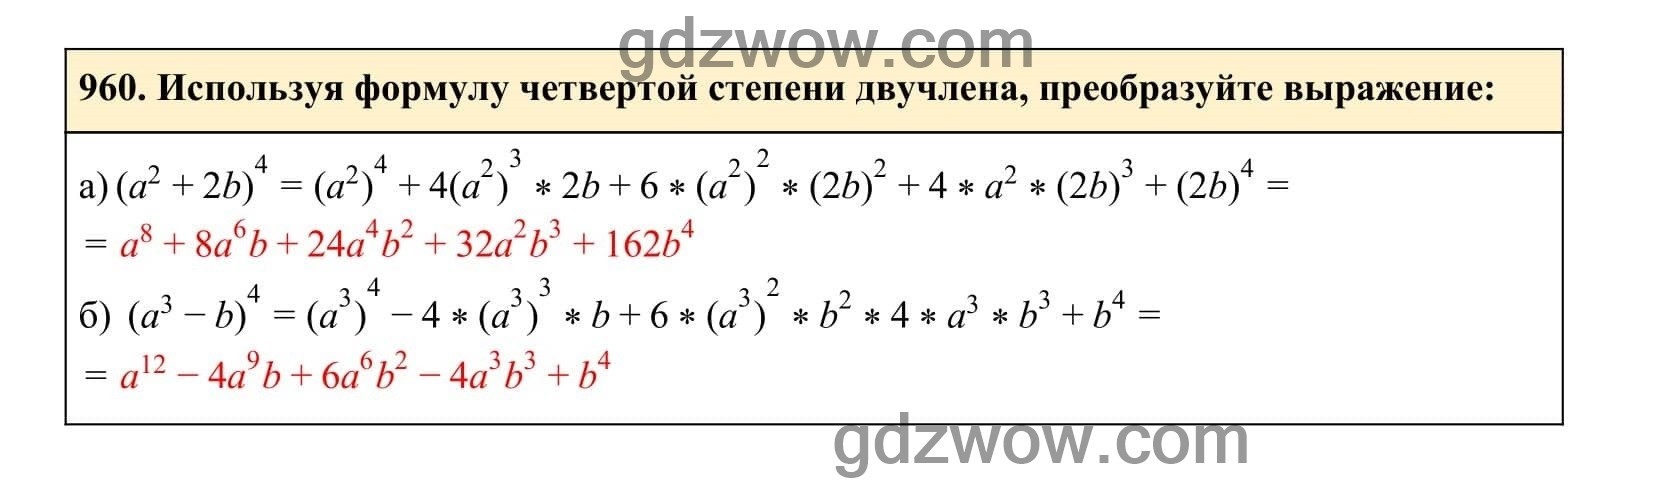 Упражнение 960 - ГДЗ по Алгебре 7 класс Учебник Макарычев (решебник) - GDZwow